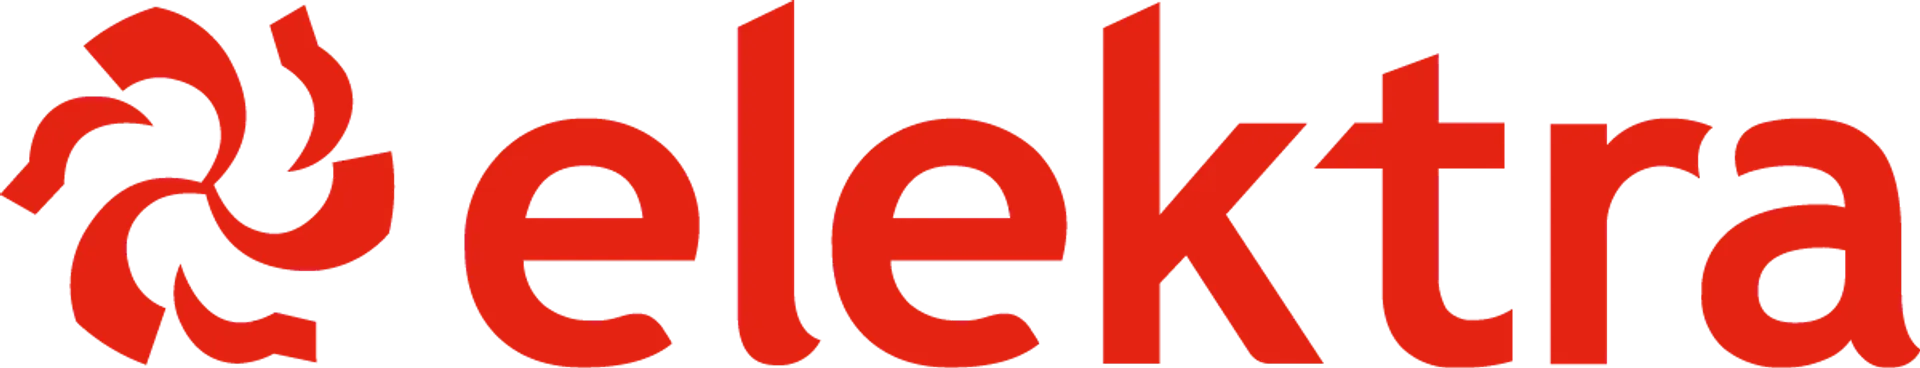 ELEKTRA logo